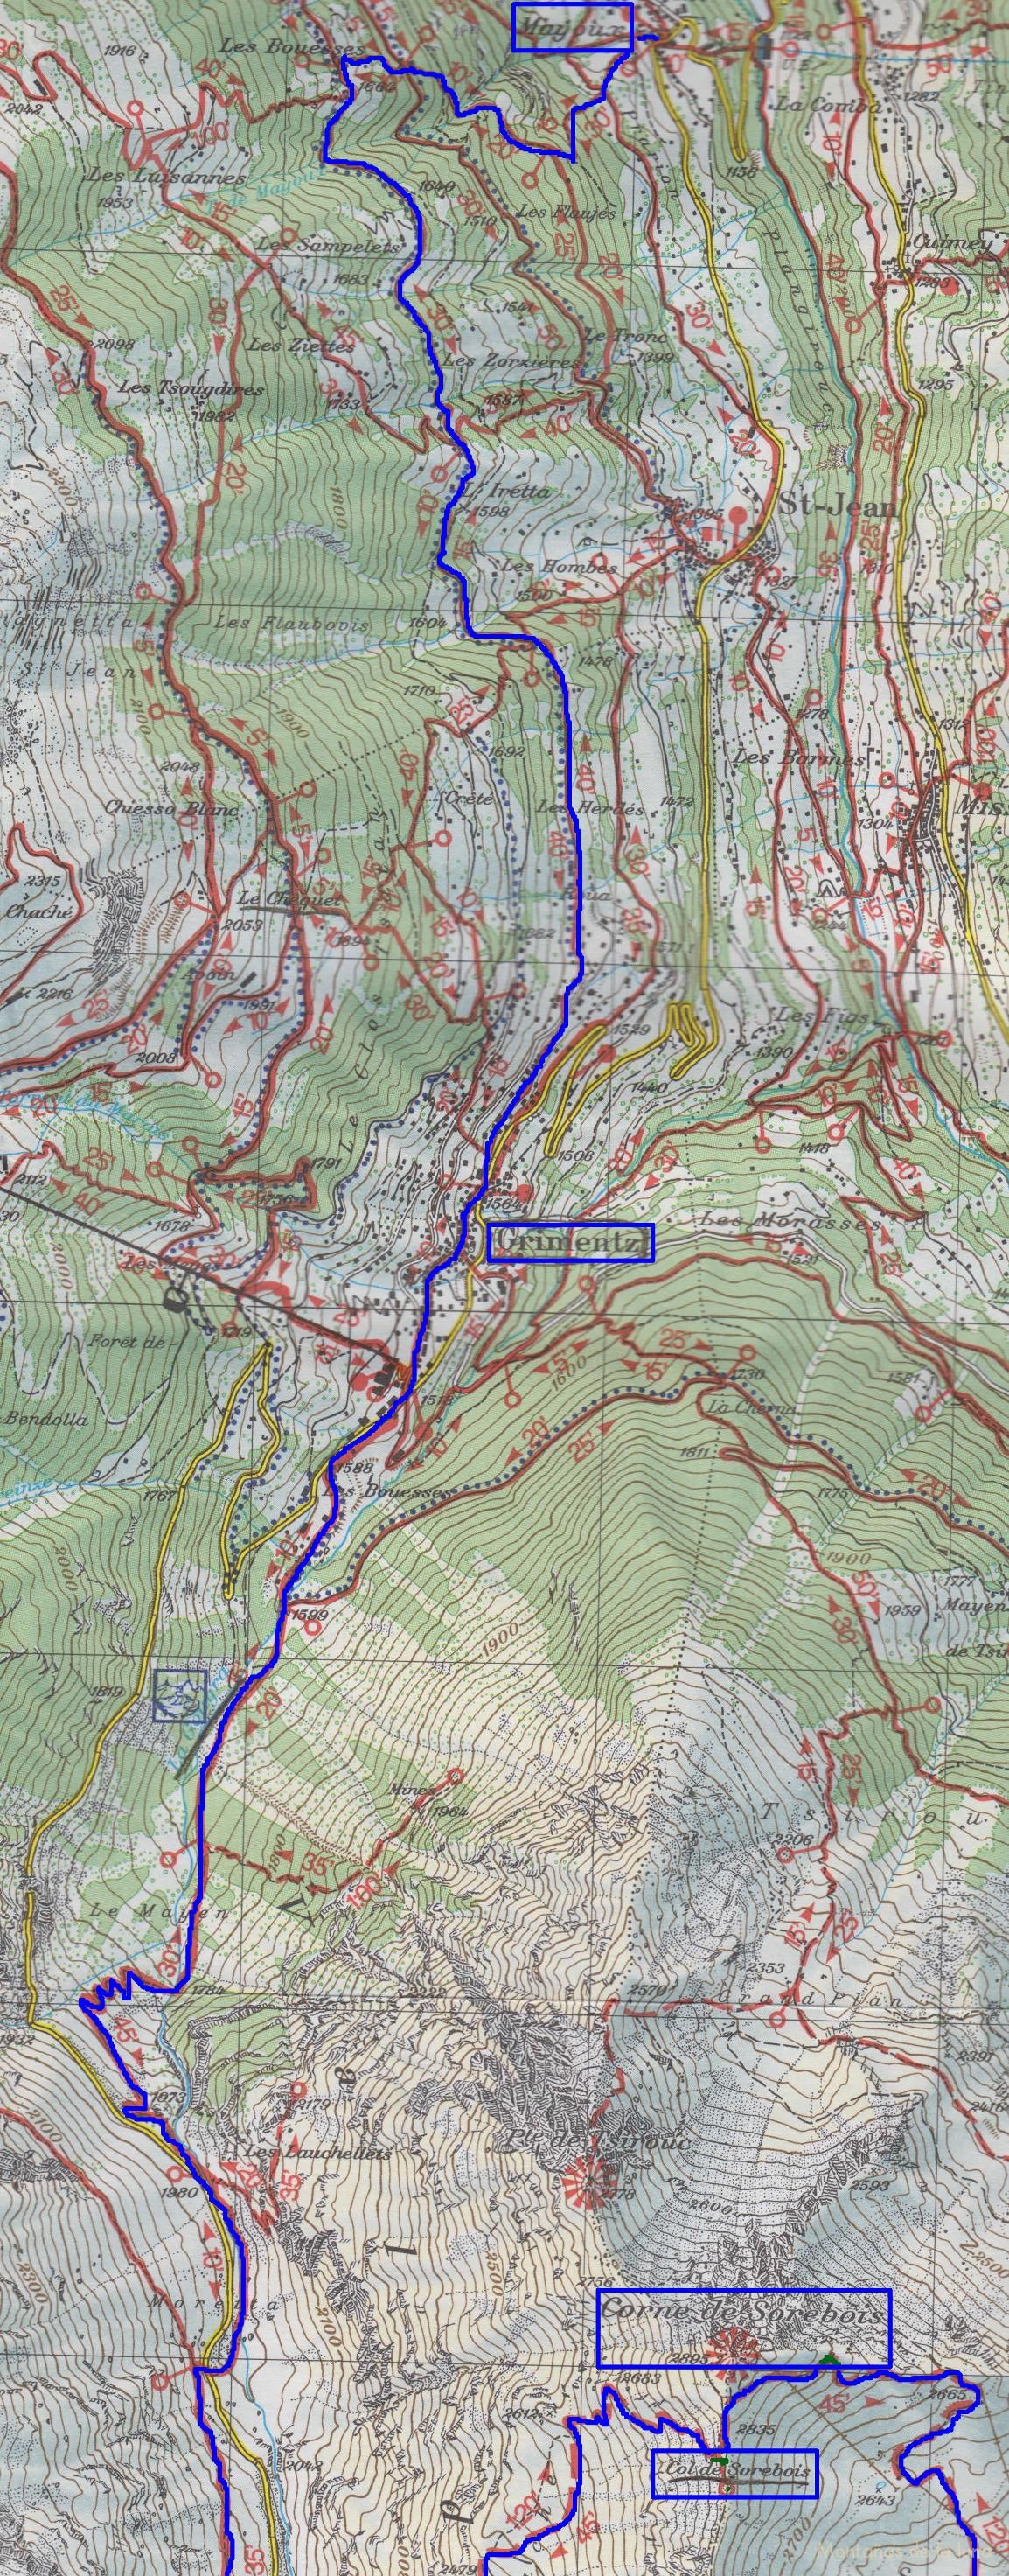 Croquis del recorrido de la 4º Etapa del Tour de la Val d’Anniviers Cabaña de Moiry-Mayoux. Aparece la ascensión y descenso del Corne y Col de Sorebois de la 3º Etapa, a la derecha.